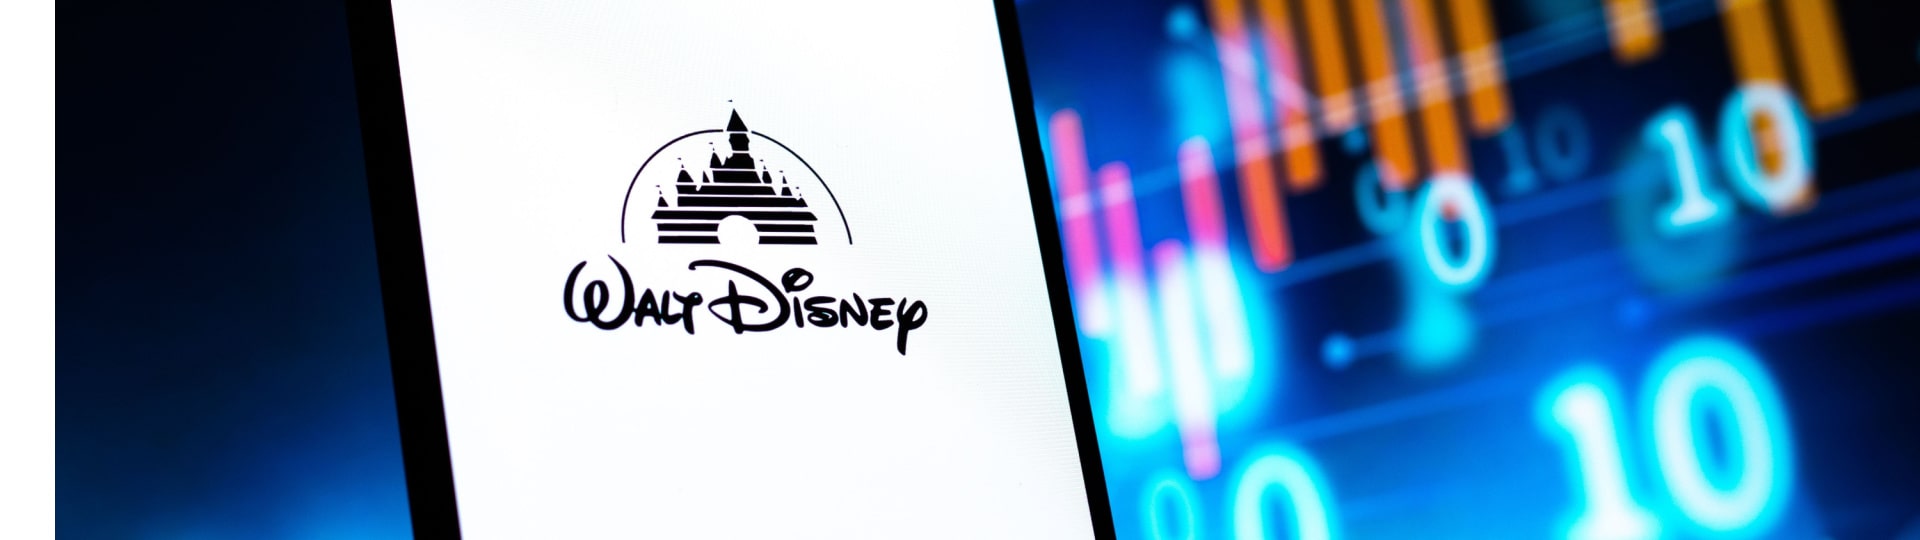 Disney má vyšší tržby i zisk